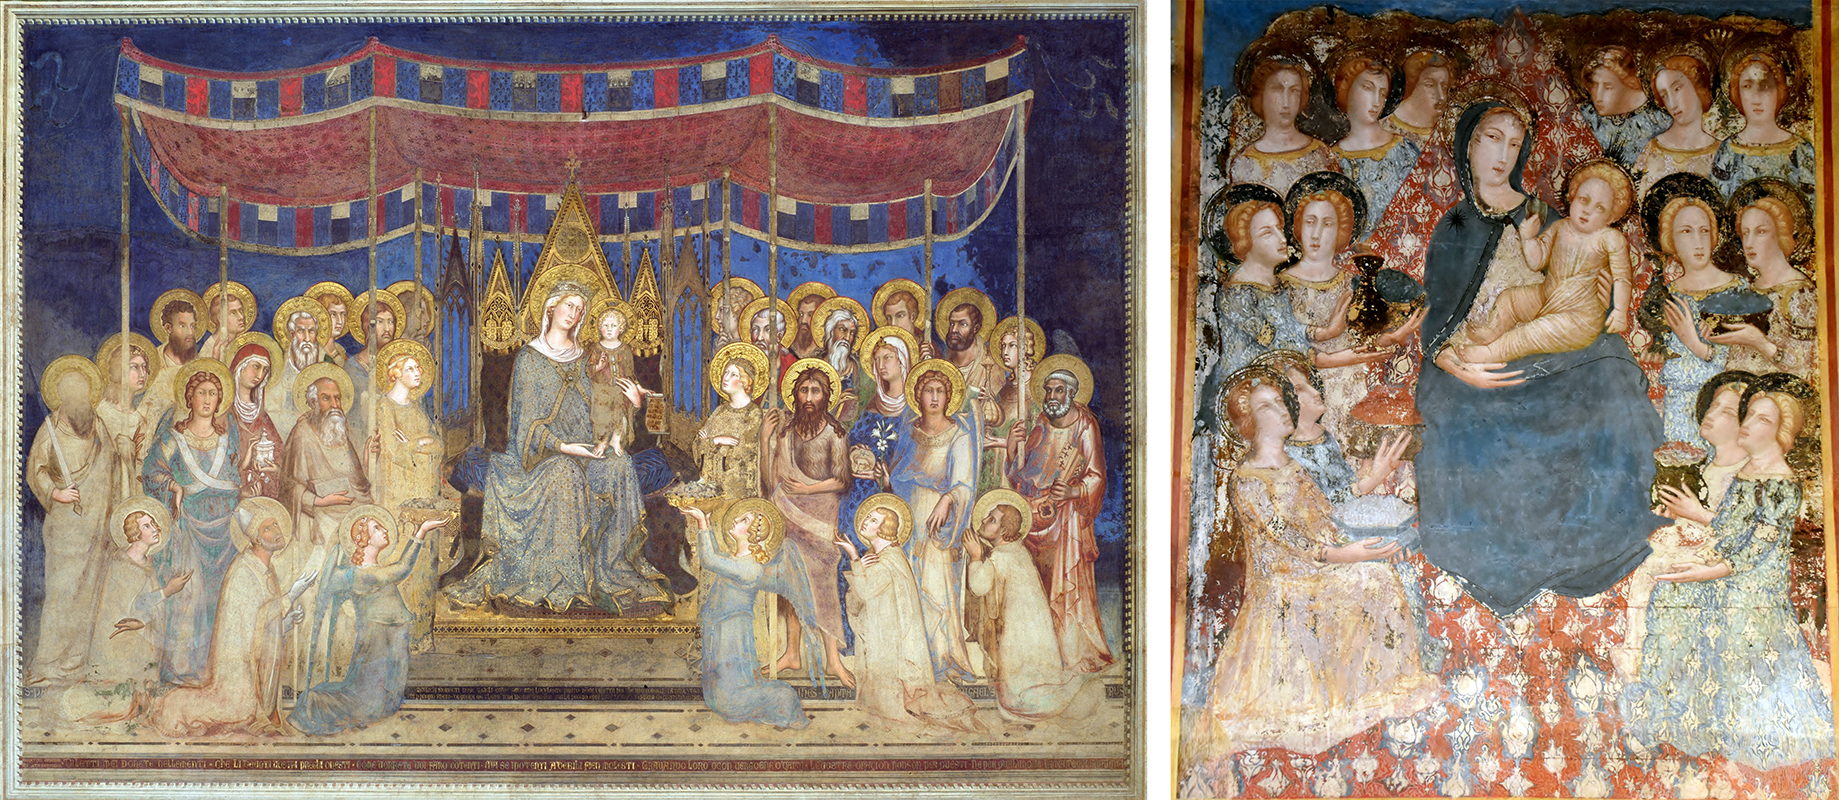 Left: Simone Martini, Maestà, fresco, Palazzo Pubblico, Siena, Italy, 1315 - 1321; Right: Ferrer Bassa, Maestà, fresco, Chapel of Saint Michael, Santa María of Pedralbes, Barcelona, Catalonia, Spain, 1343/1346-1348